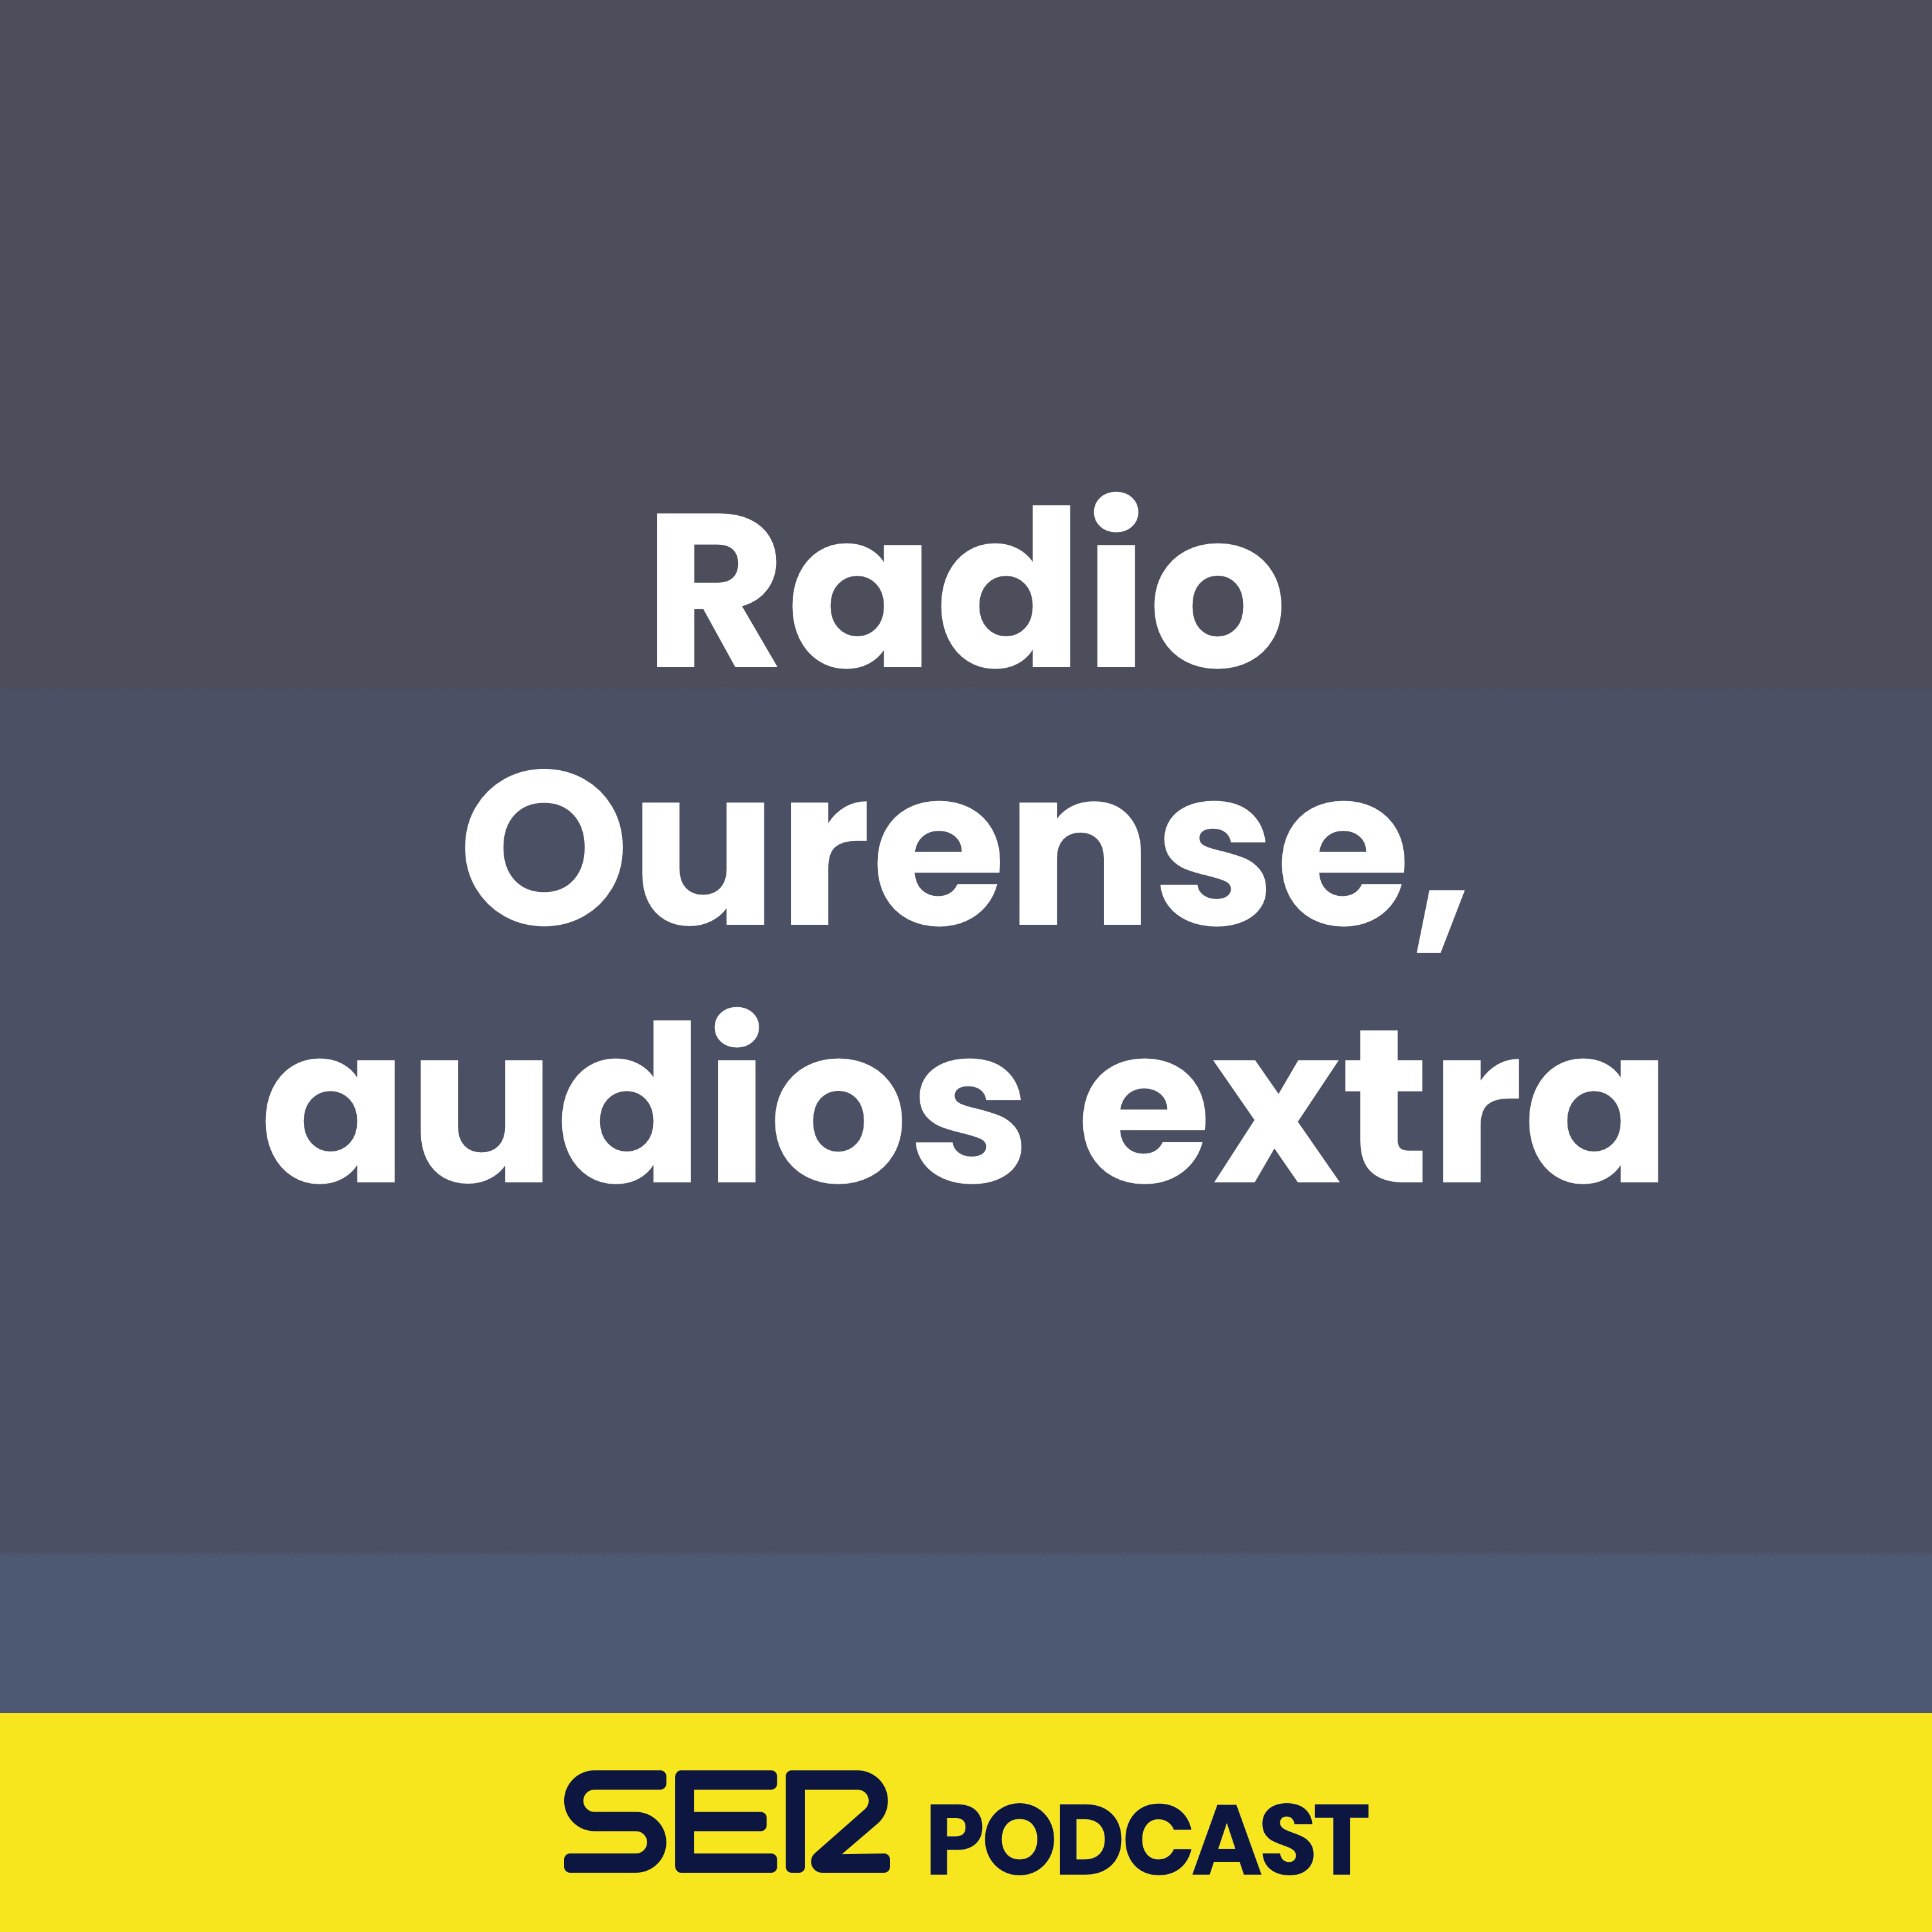 Radio Ourense, audios extra